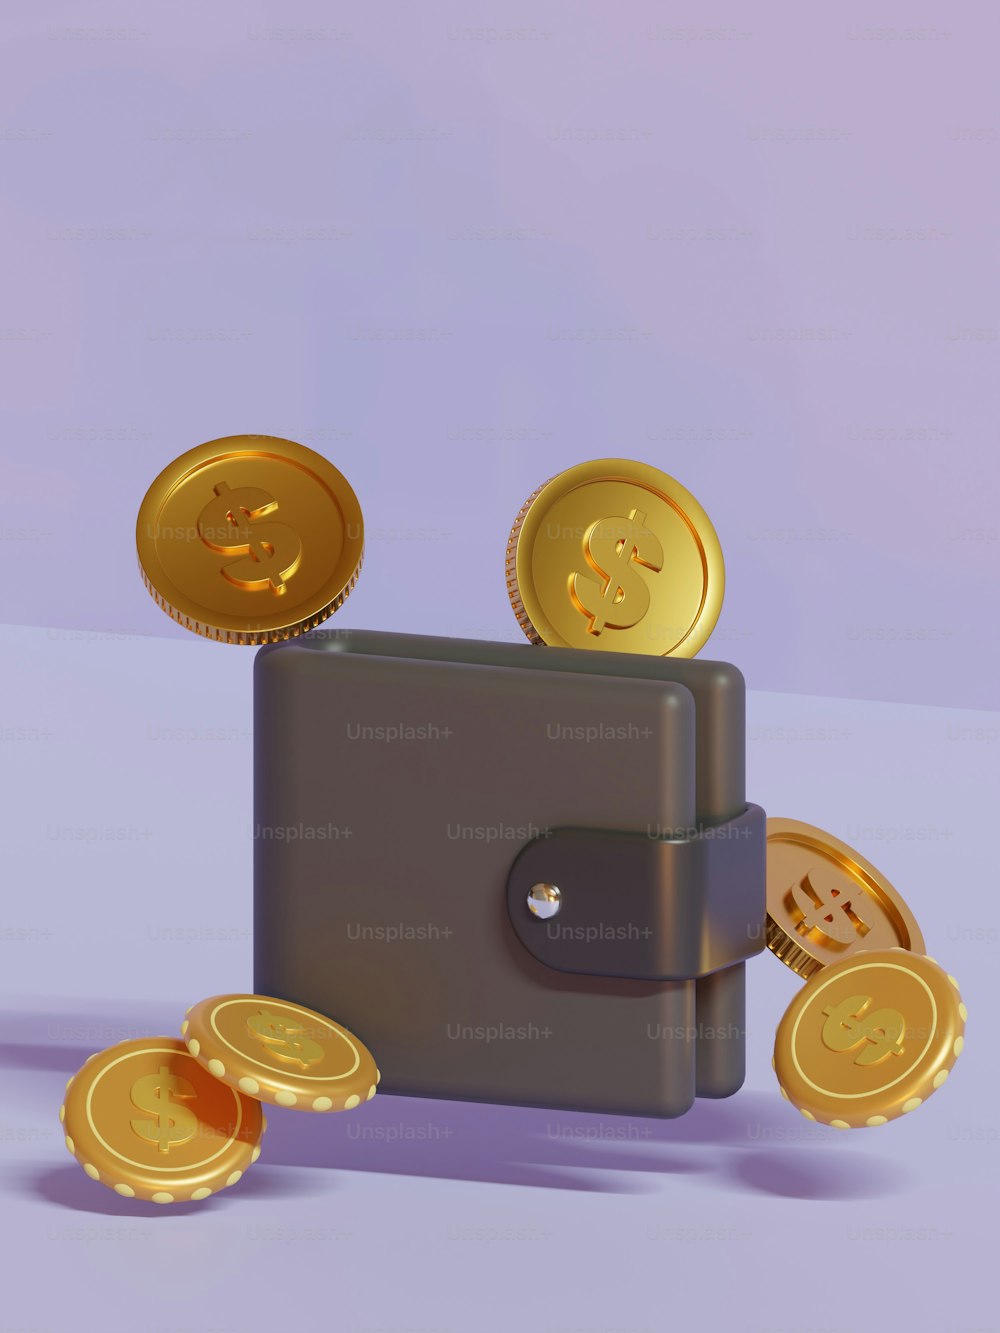 Una billetera con monedas de oro que salen de ella